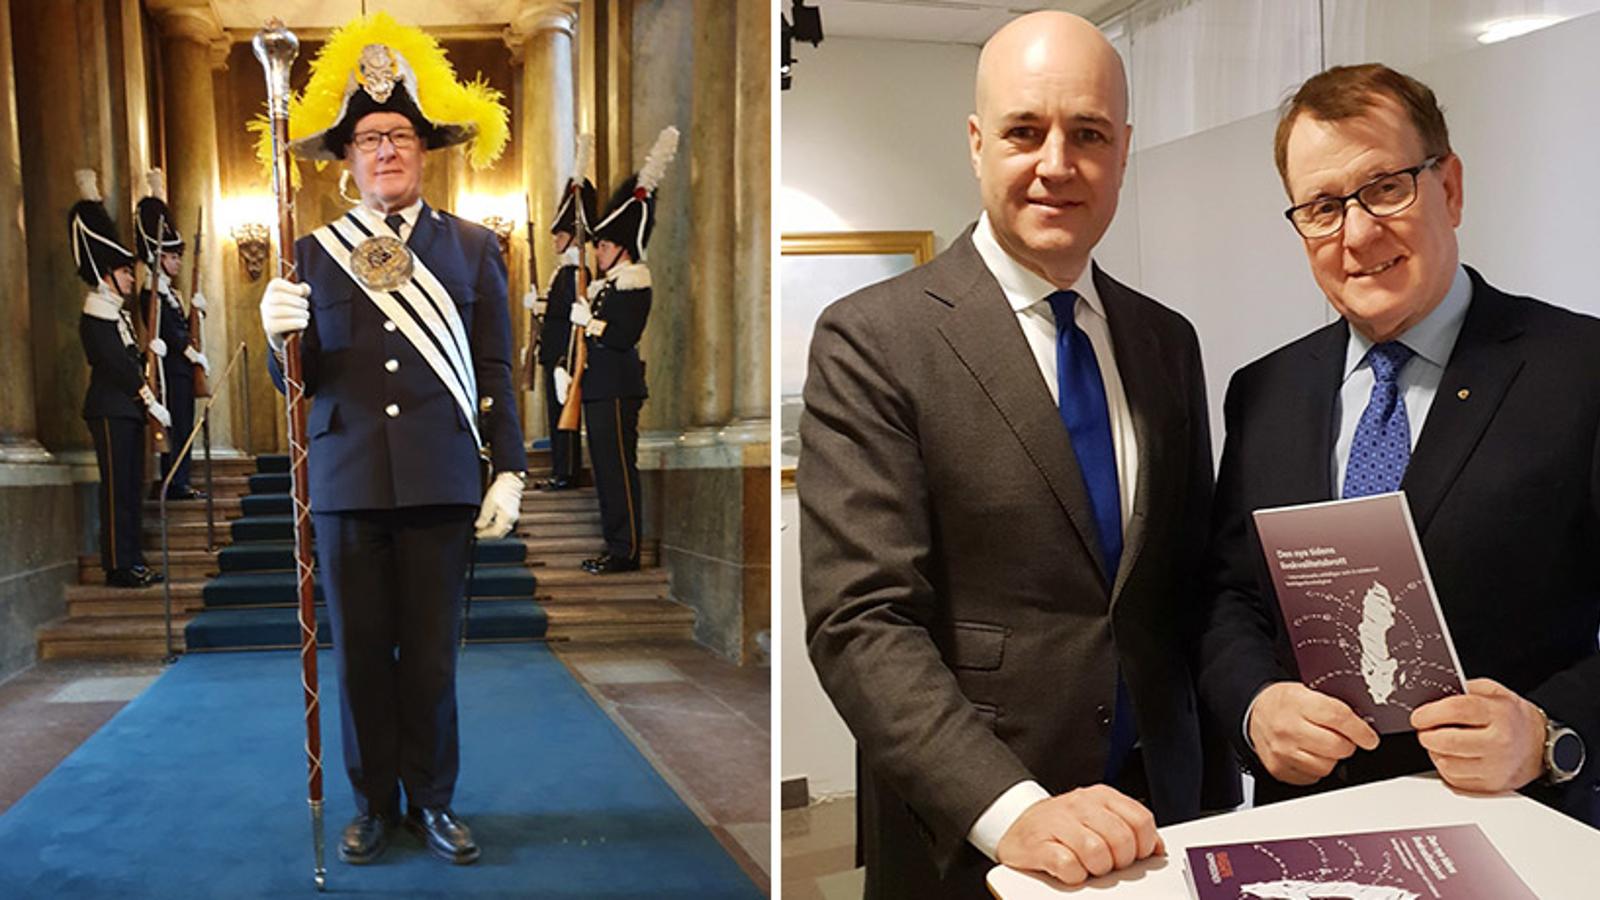 Till vänster: Christer som vakt på Kungliga slottet i Stockholm. Till höger: Christer tillsammans med tidigare statsministern Fredrik Reinfeldt.